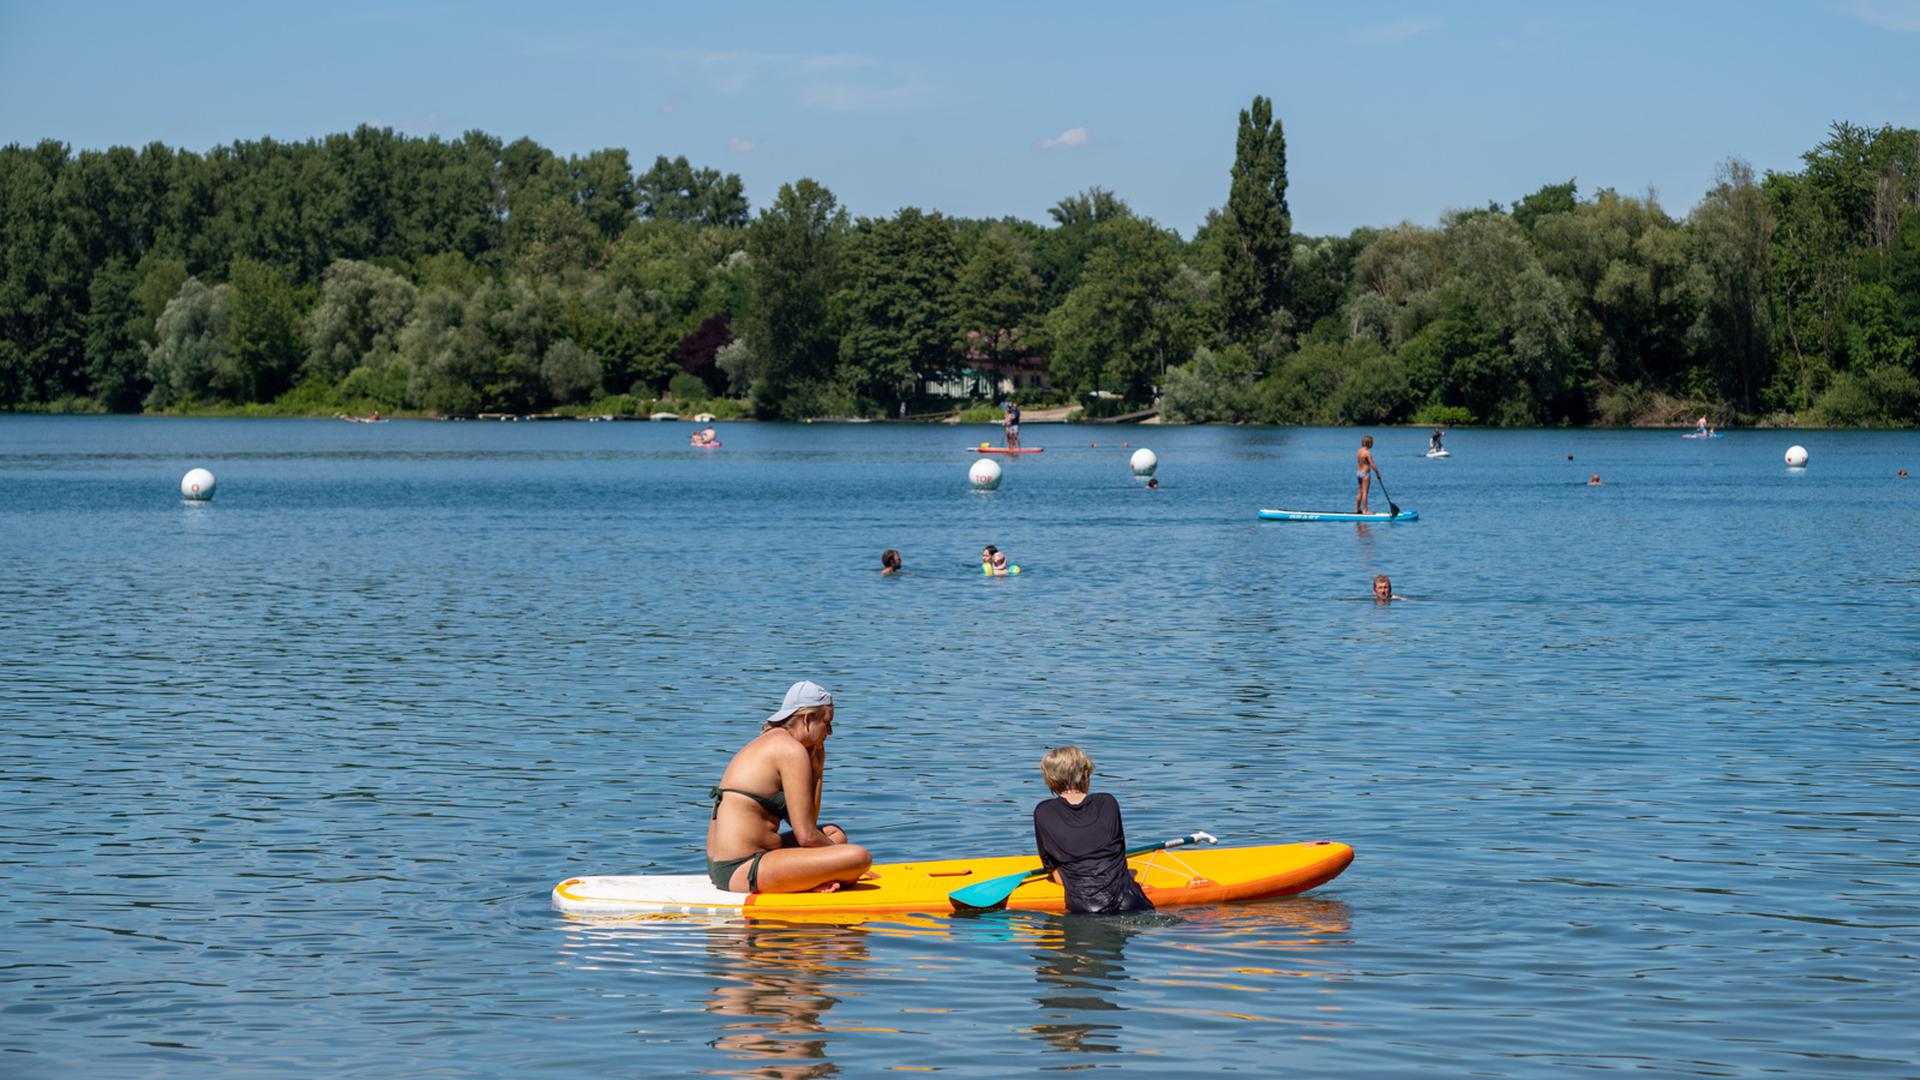 Ein Sommer-Sonntag am Baggersee Grötzingen mit vielen Besuchern und Sonne pur.